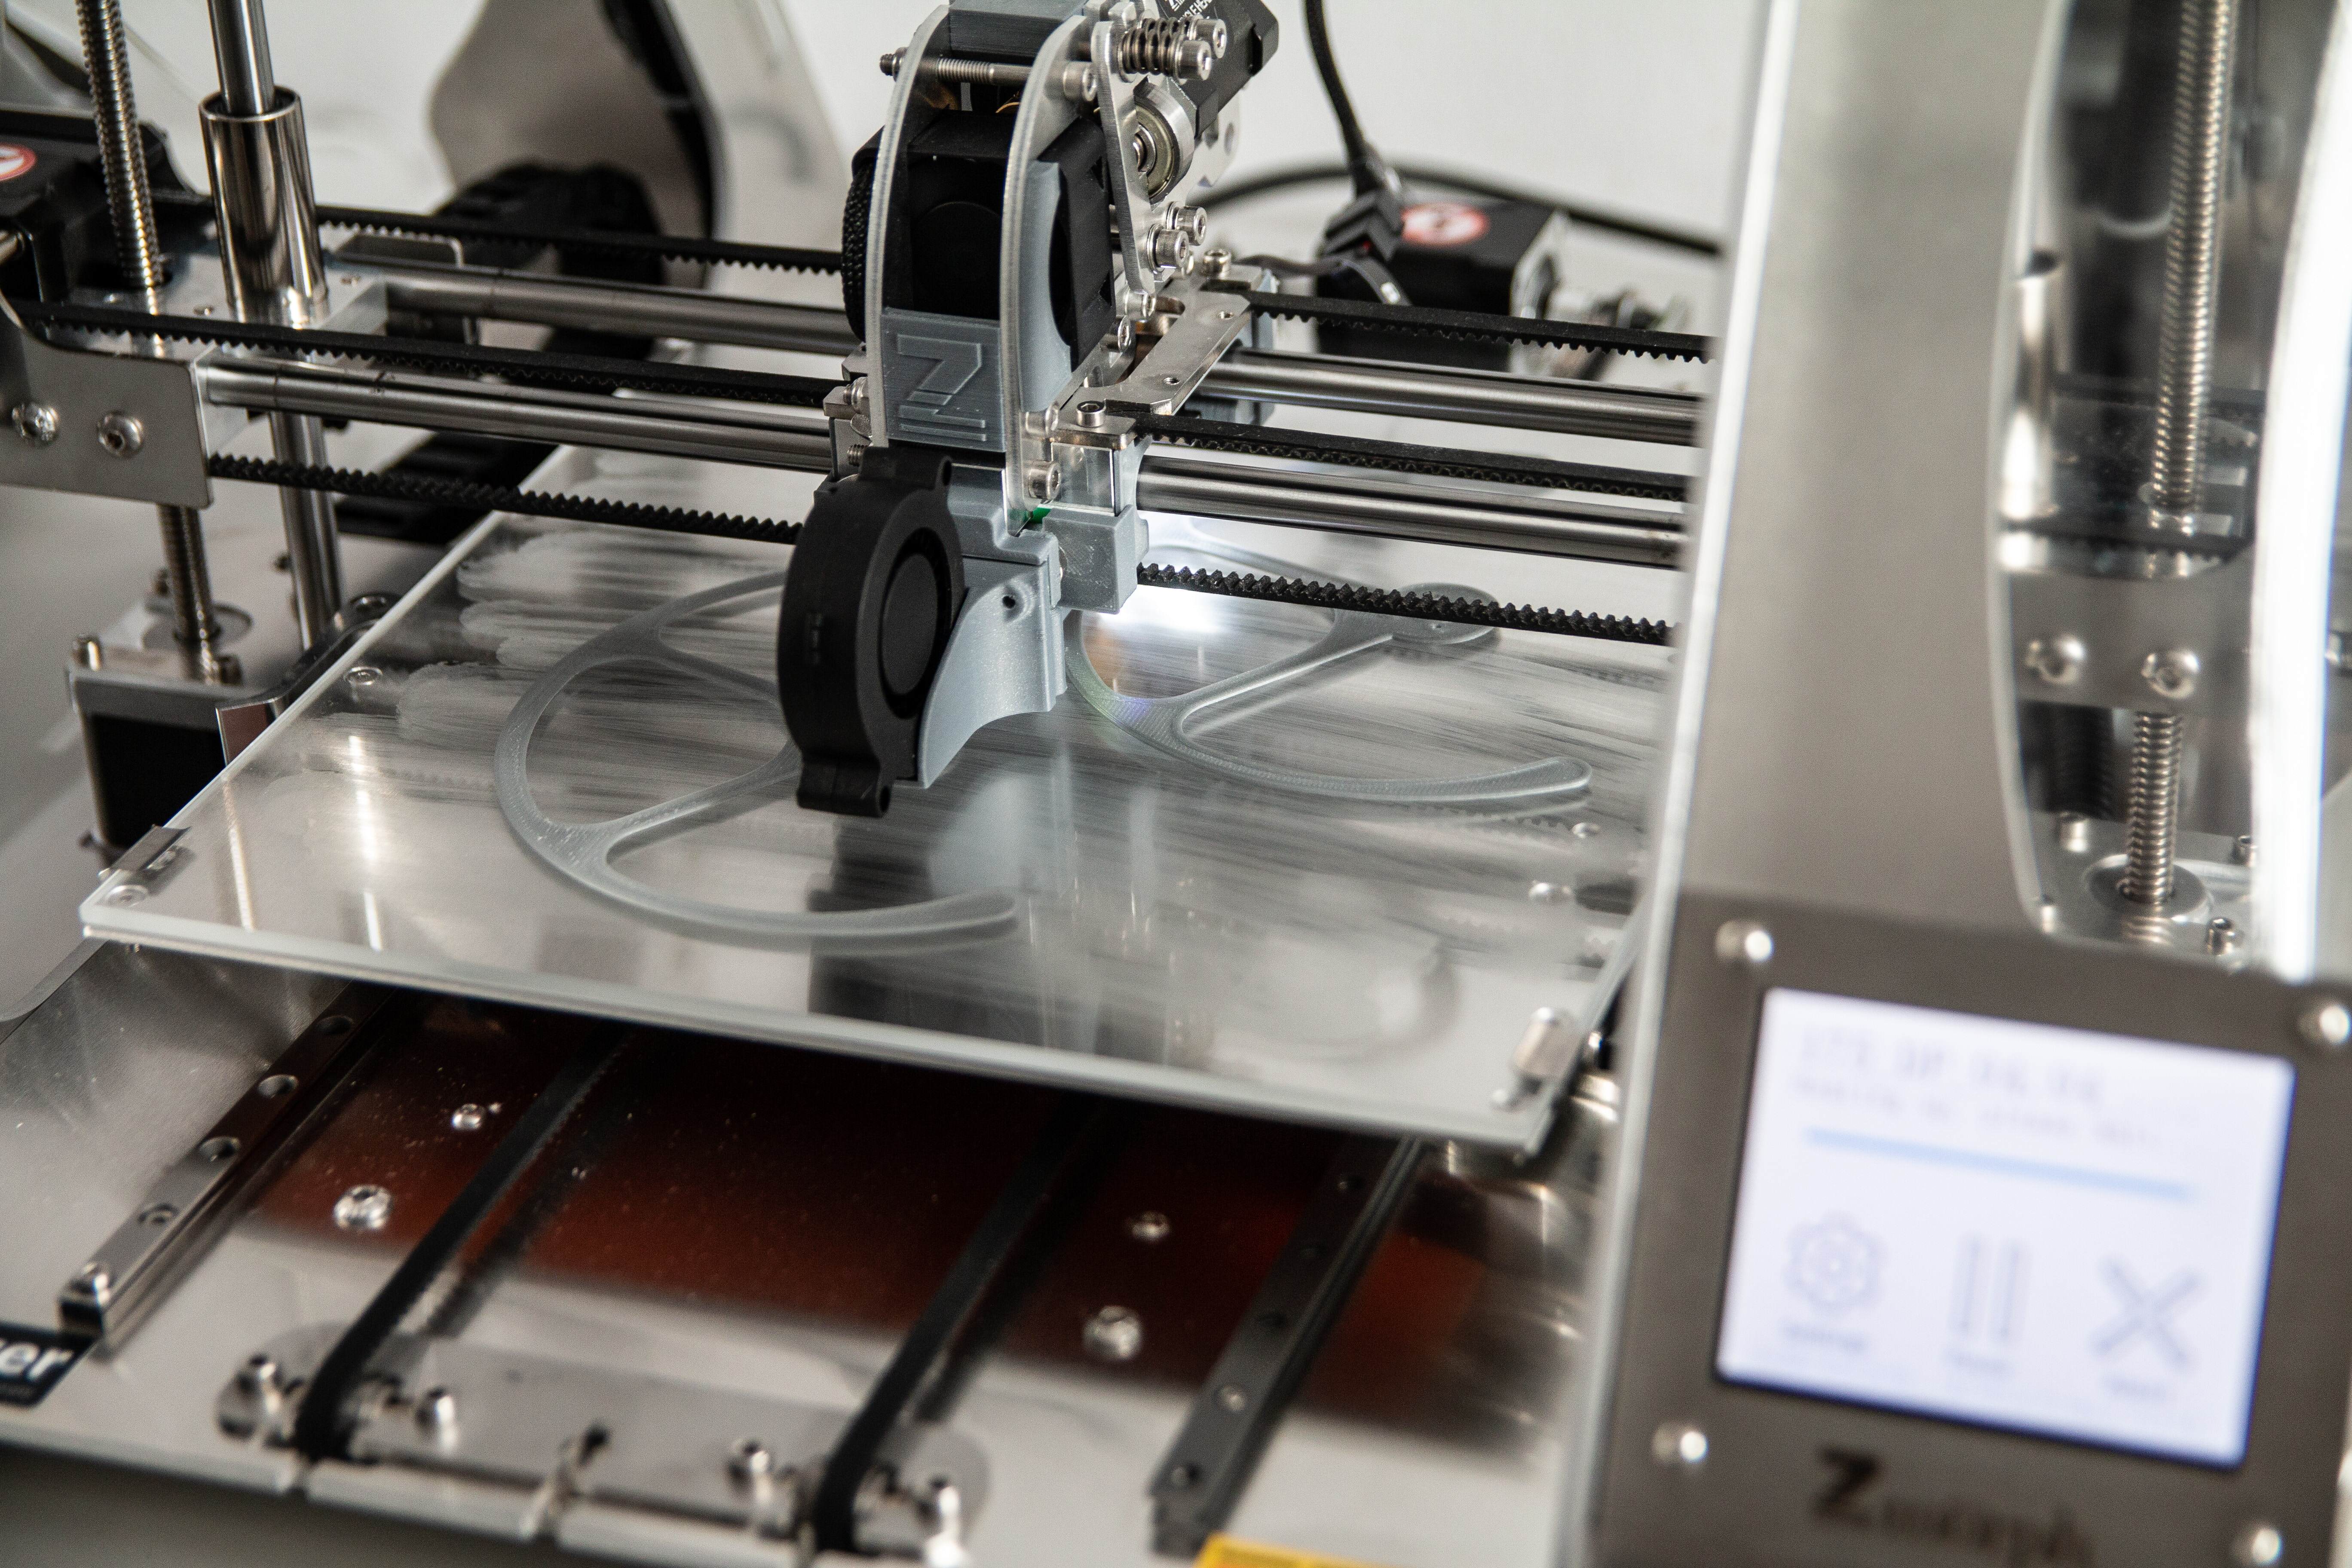 3D printer printing something